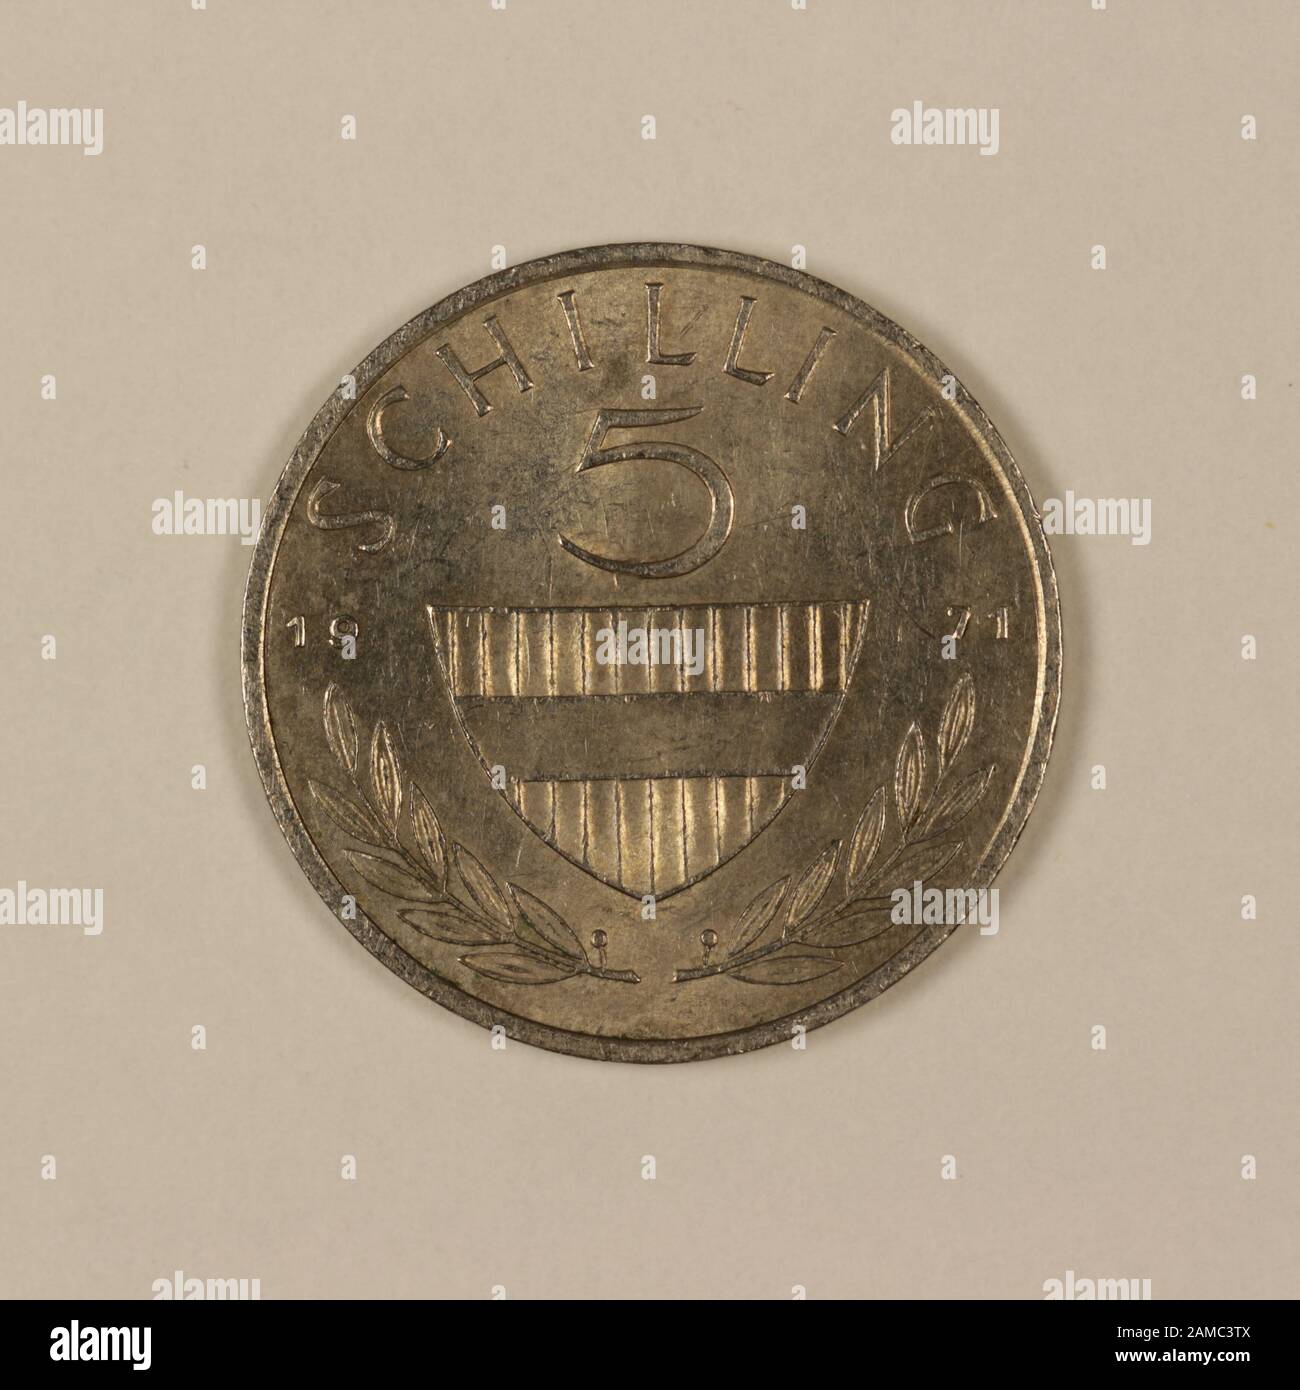 Vorderseite einer ehemaligen Österreichischen 5 Schilling Münze Foto Stock